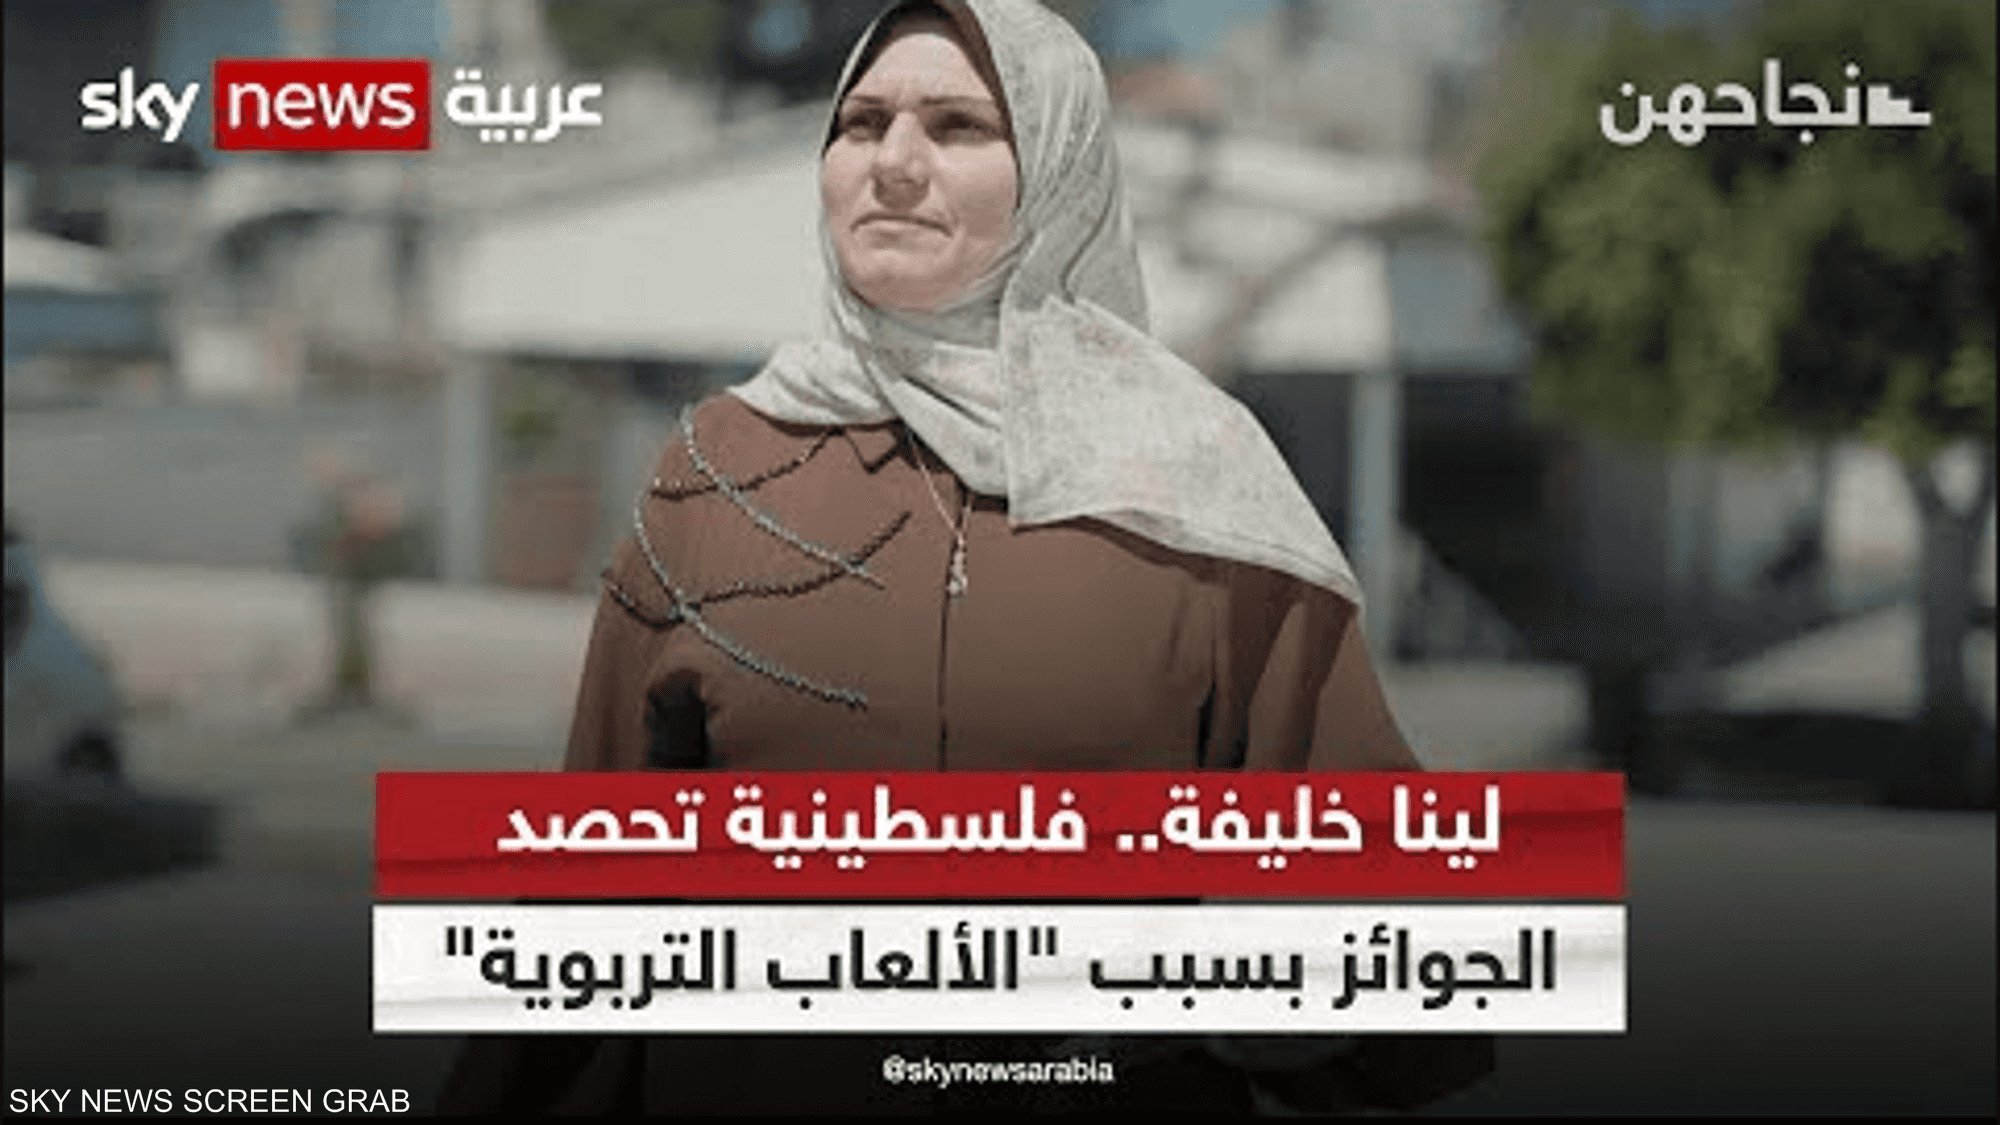 لينا خليفة.. فلسطينية تحصد الجوائز بسبب "الألعاب التربوية"